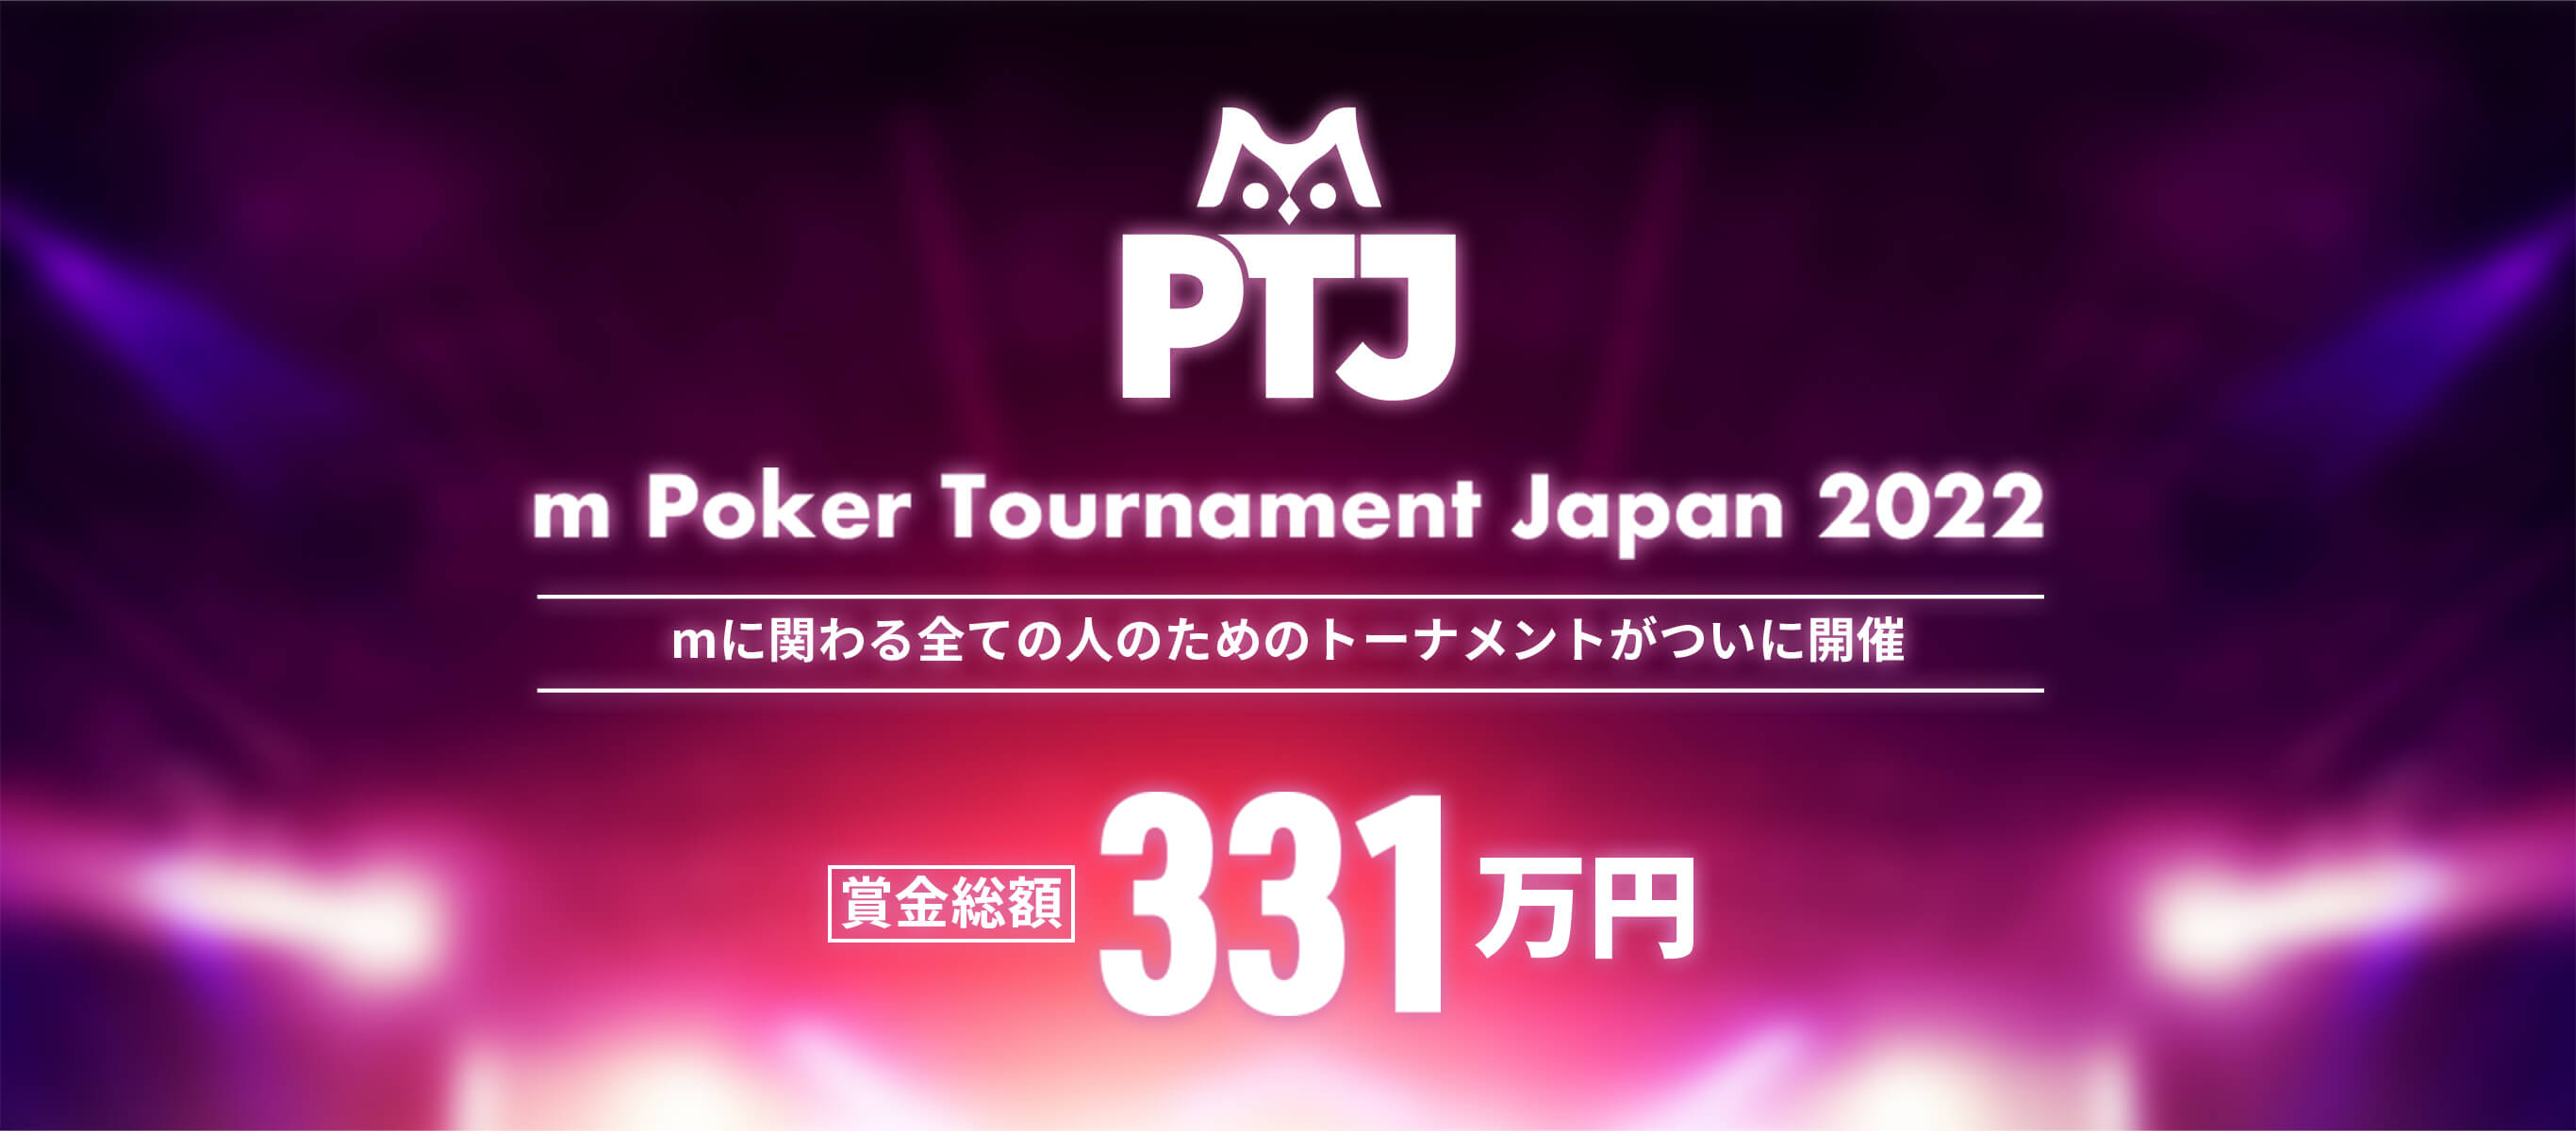 m Poker Tournament Japan 2022 mに関わる全ての人のためのトーナメントがついに開催 賞金総額 331万円